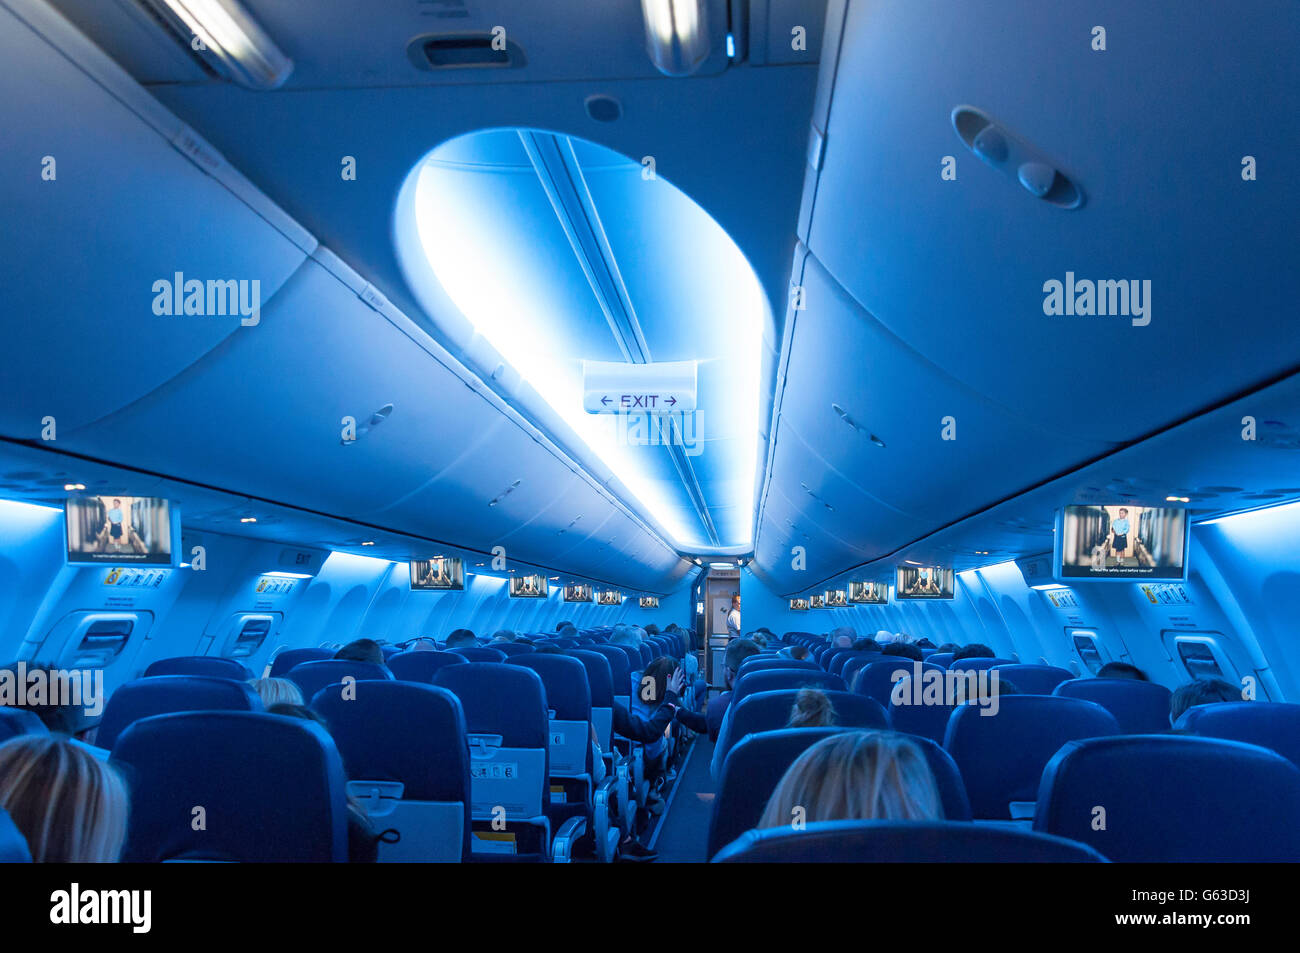 Boeing 737 Stockfotos Boeing 737 Bilder Seite 2 Alamy